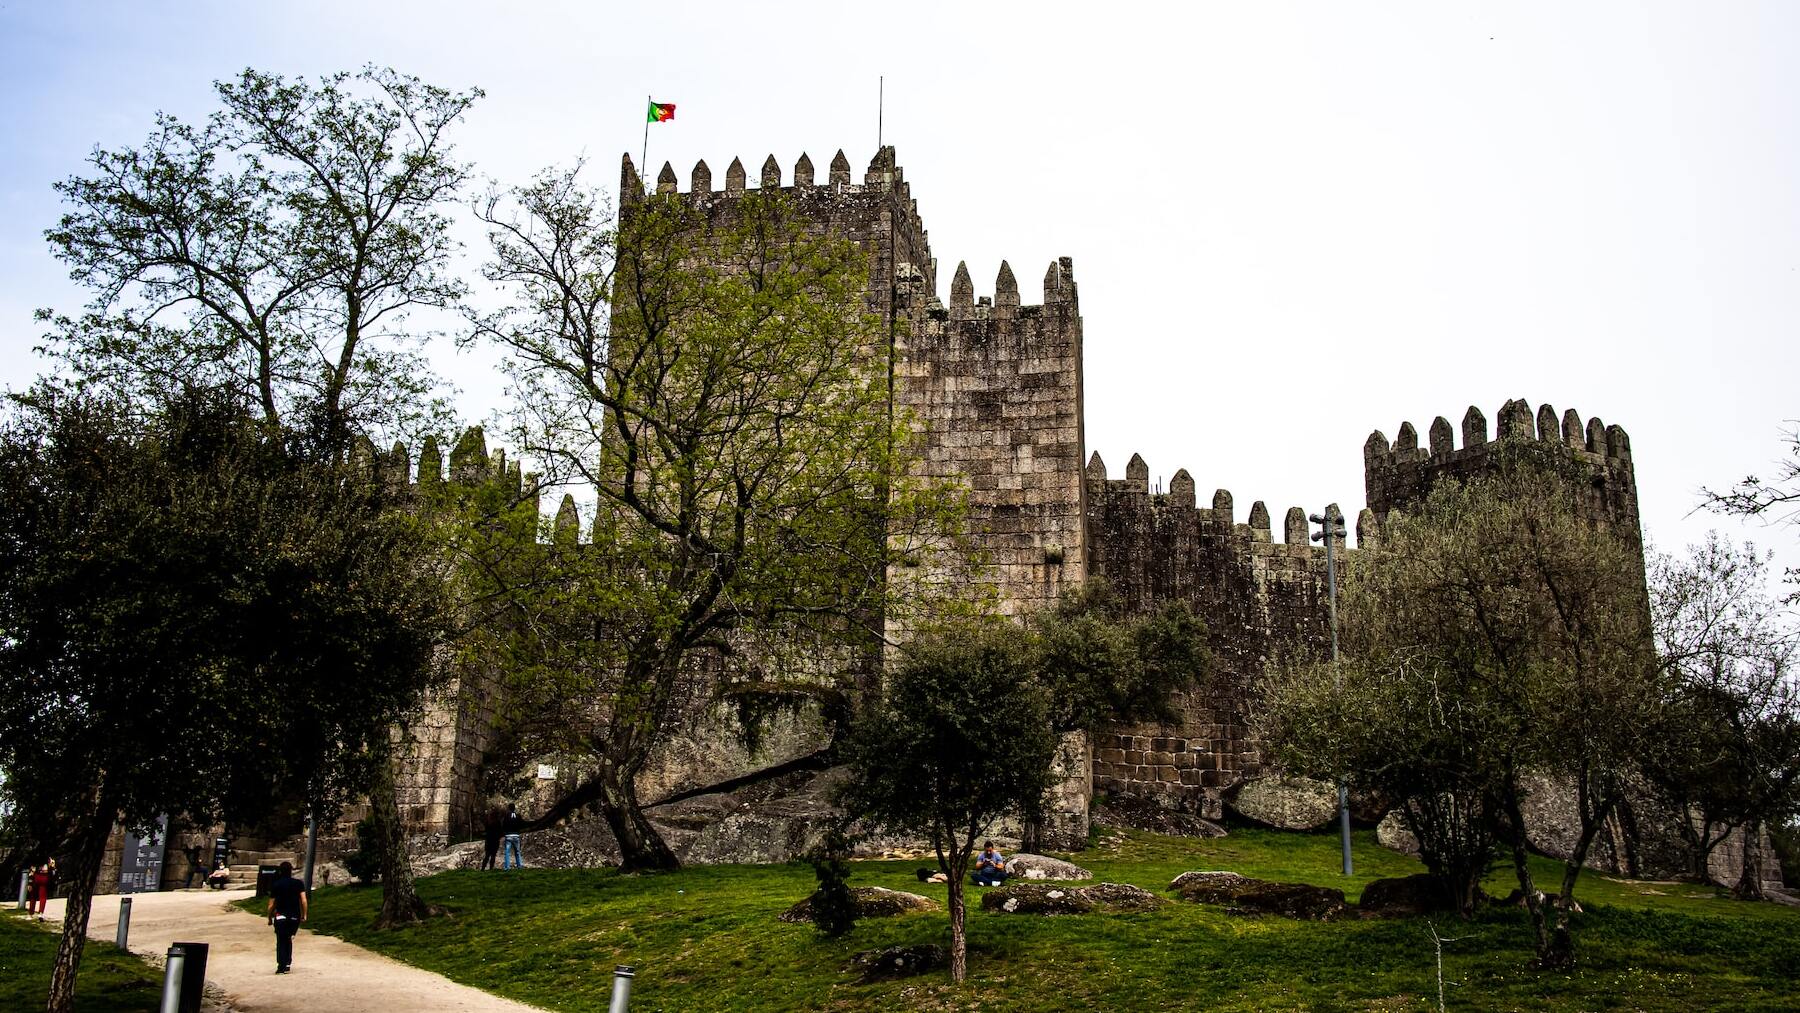 Castillo de Guimaraes